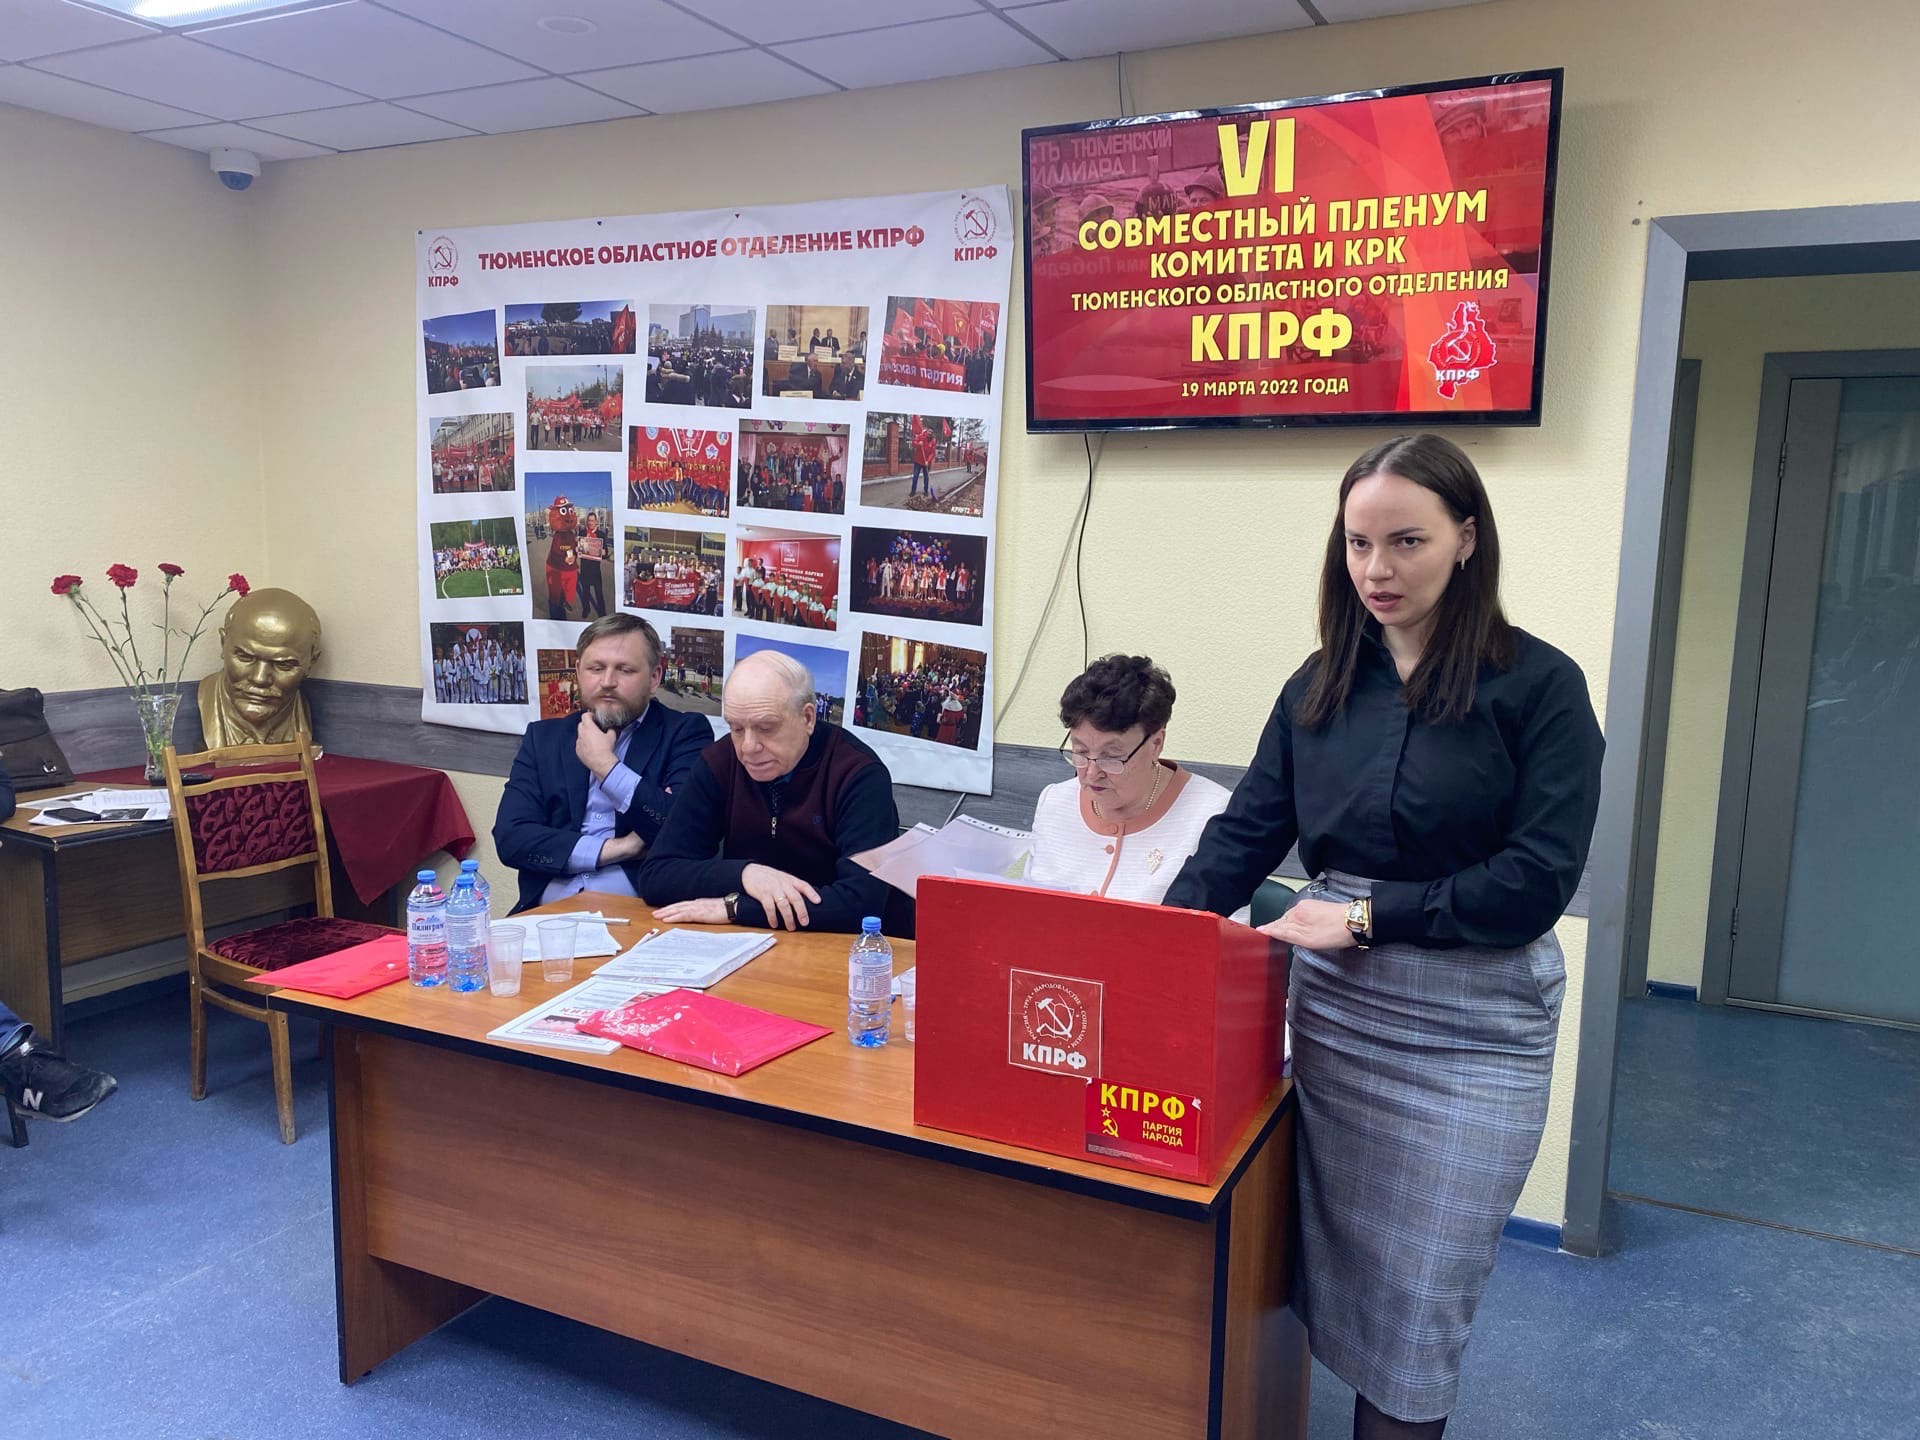 19 марта состоялся очередной Пленум Комитета Тюменского областного отделения КПРФ